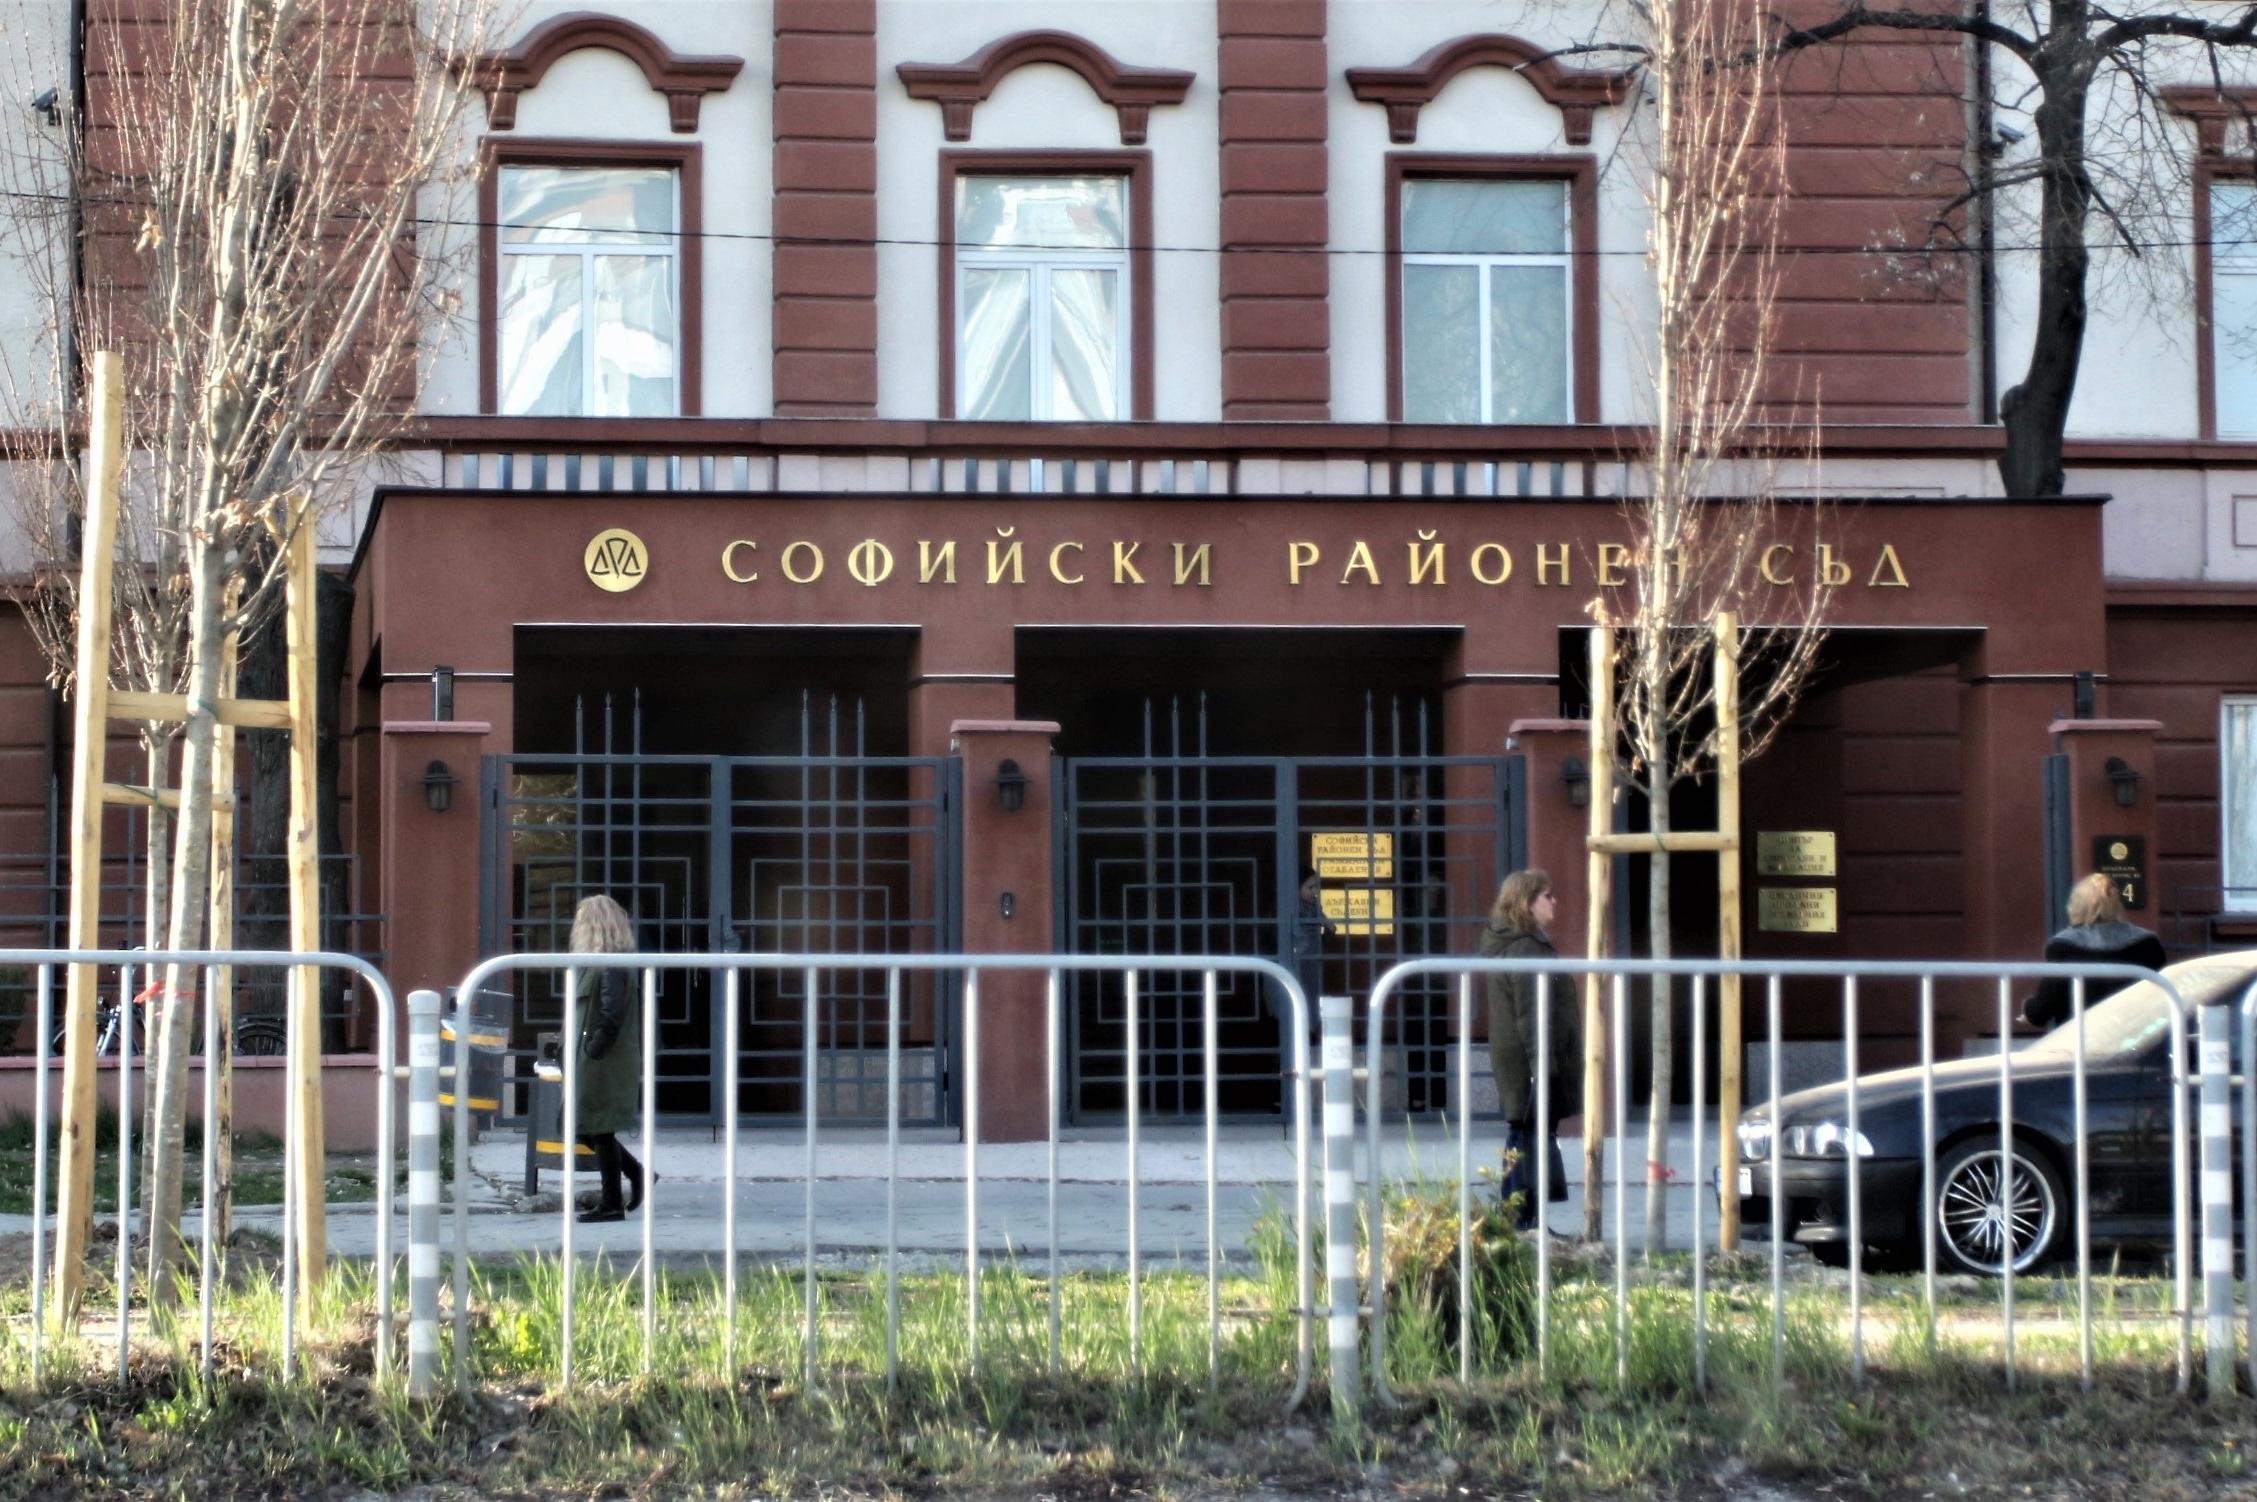 Софийска районна прокуратура предаде на съд мъж за хулиганско поведение